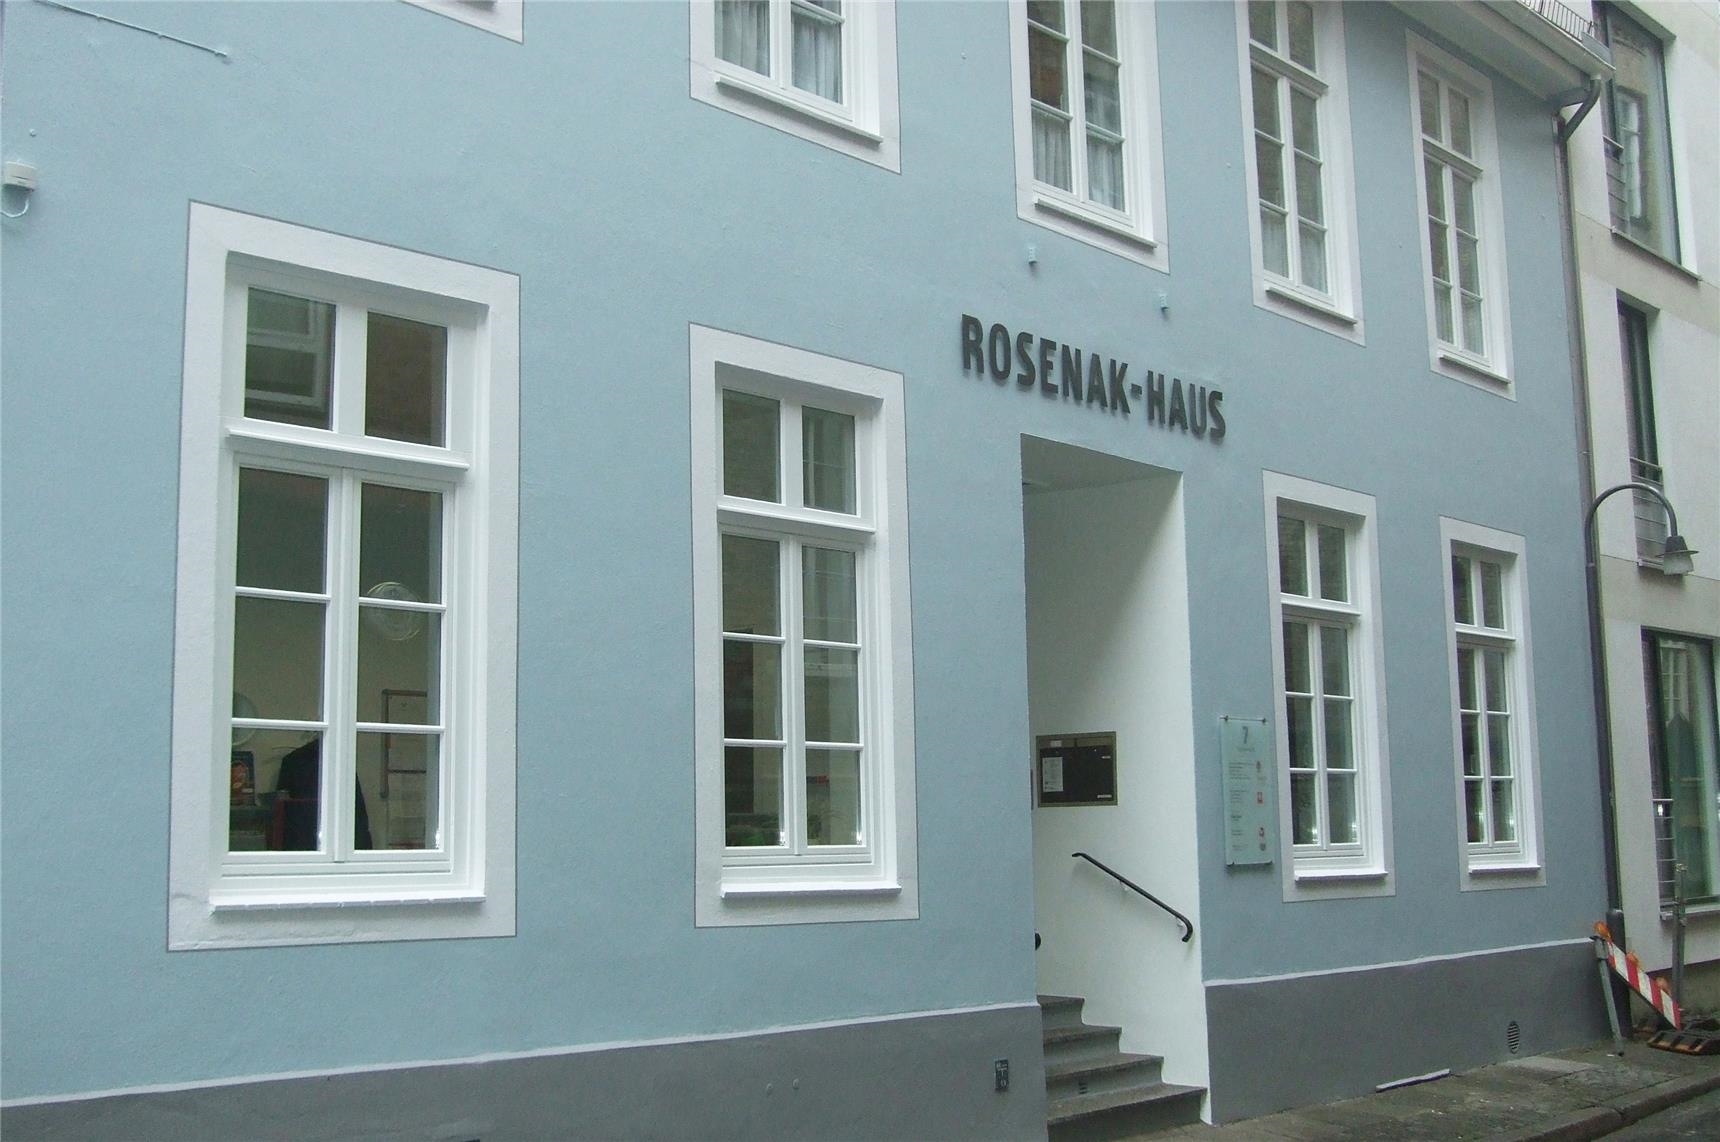 Rosenak-Haus